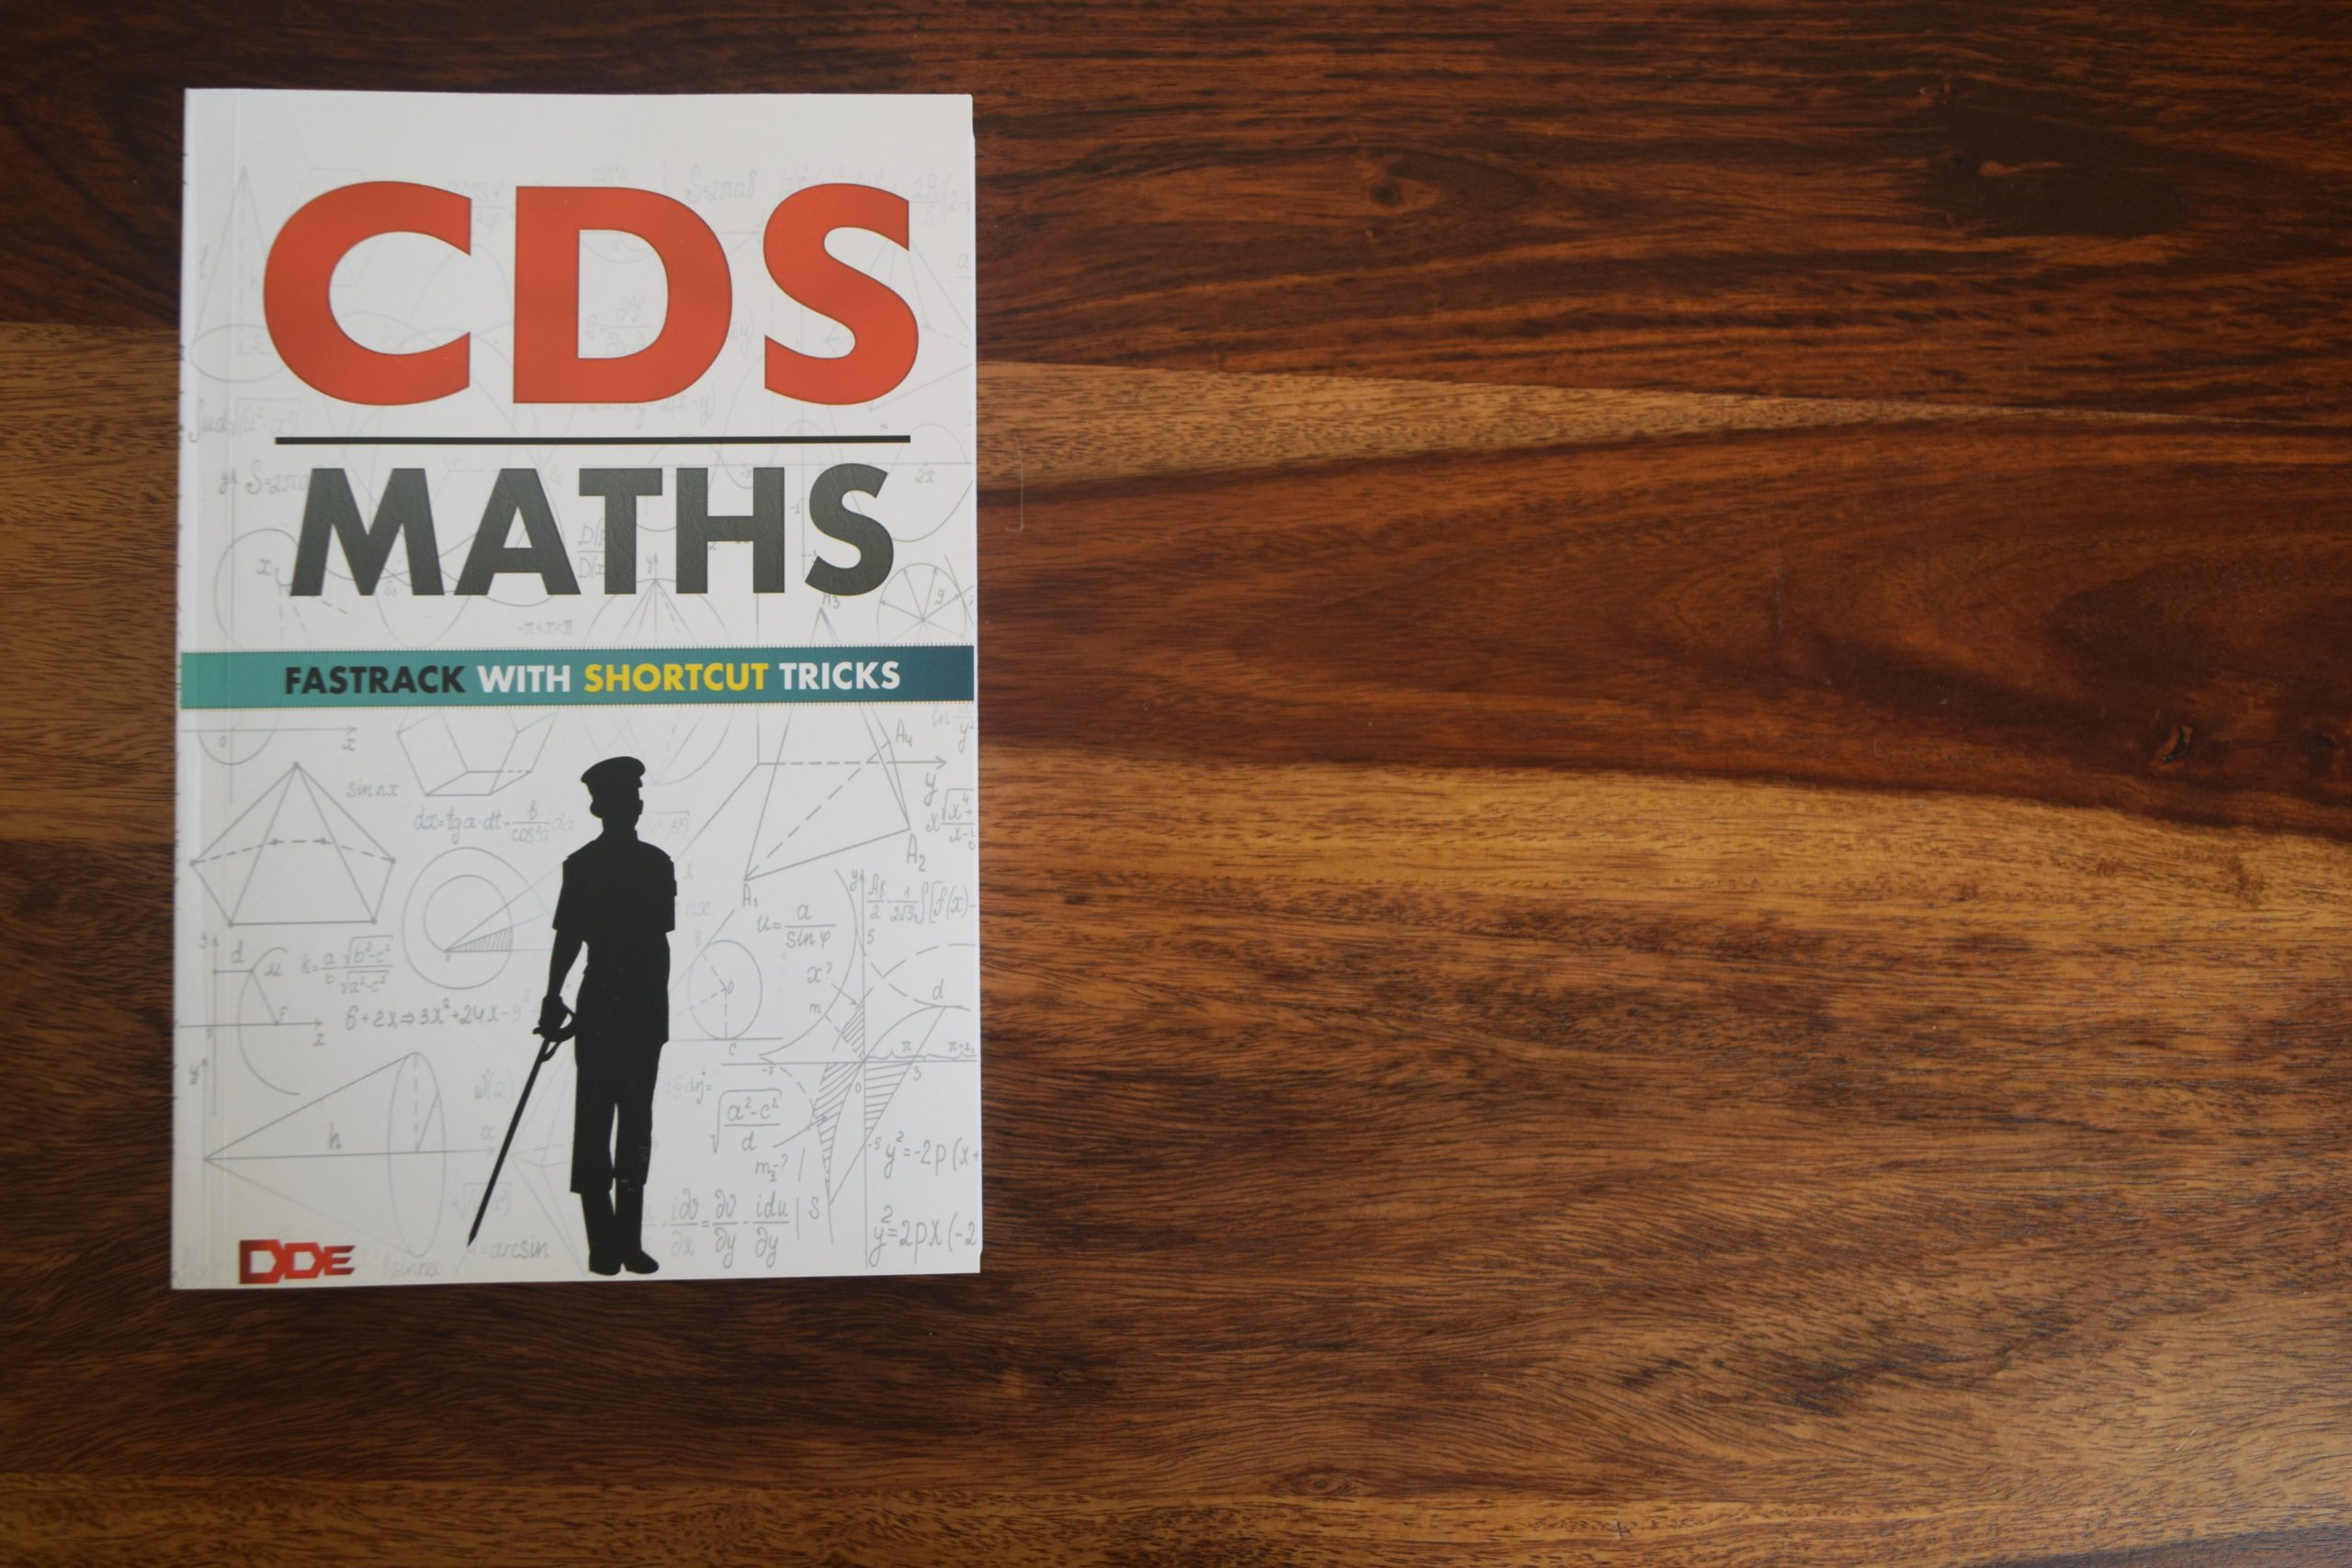 cds maths dde book